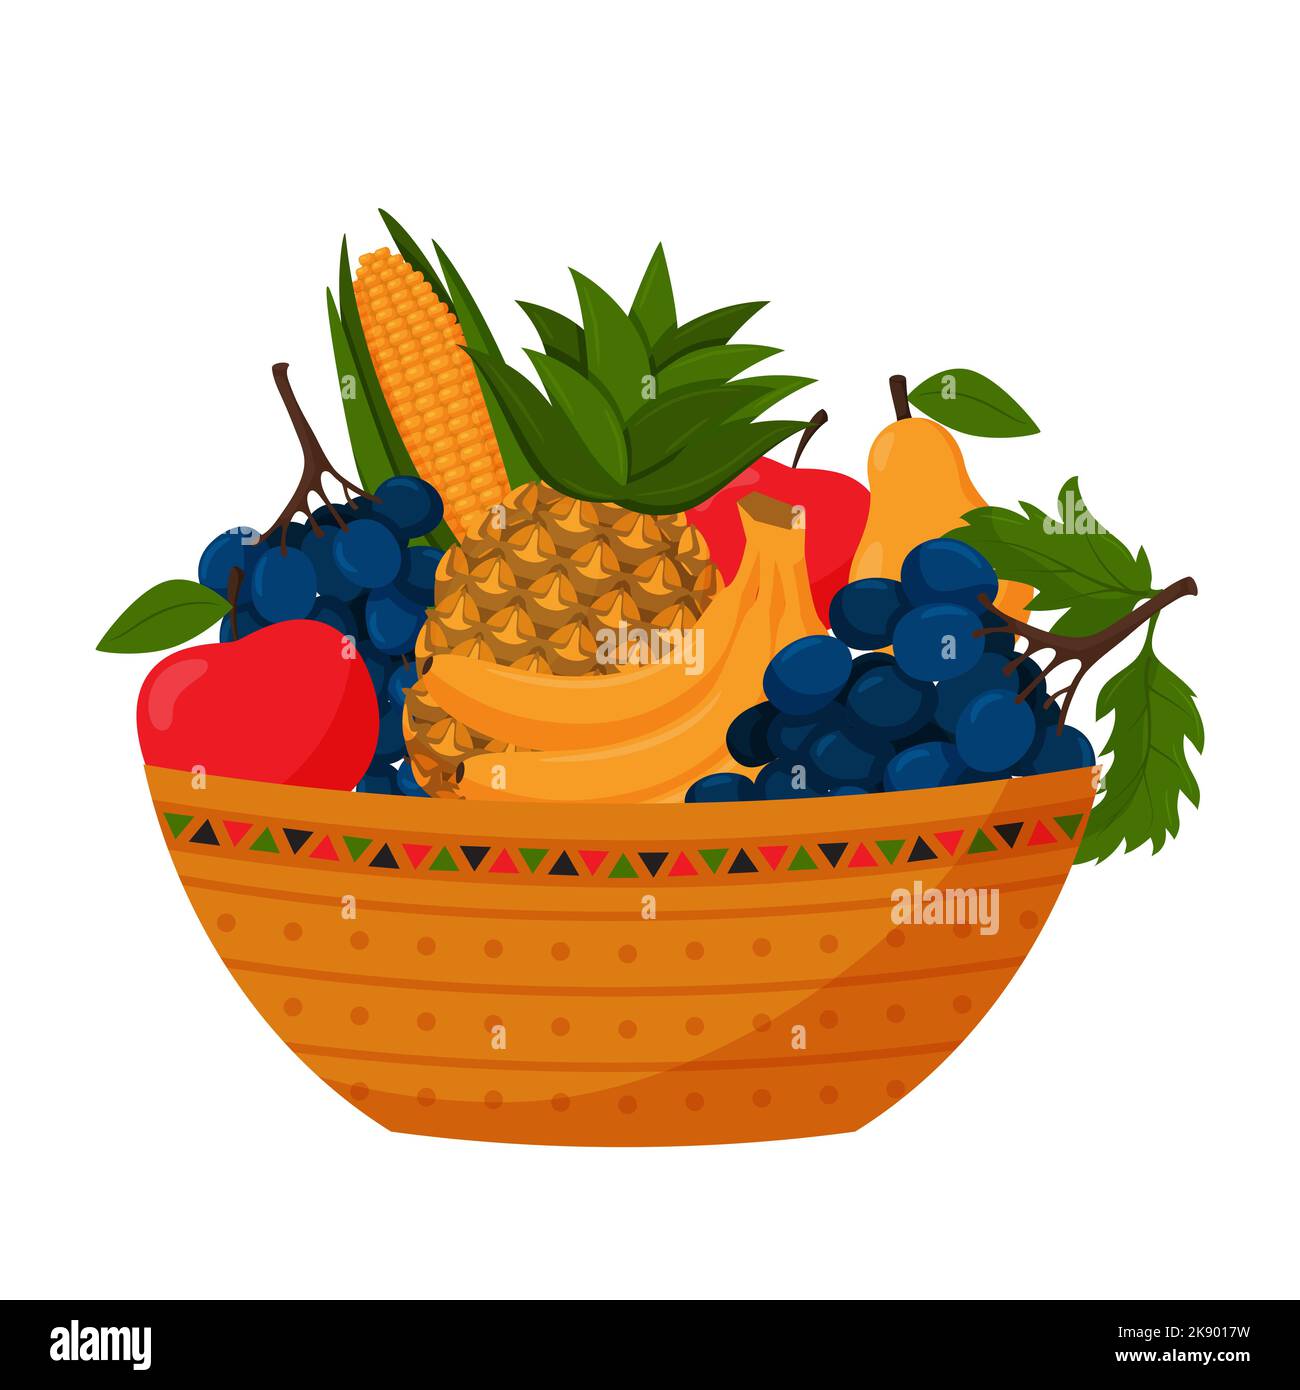 Una ciotola piena di frutta. Ananas, uva, banane, mele, pere e mais. Raccolto autunnale, vegetariano, prodotti agricoli. Illustrazione vettoriale a colori nel carrello Illustrazione Vettoriale